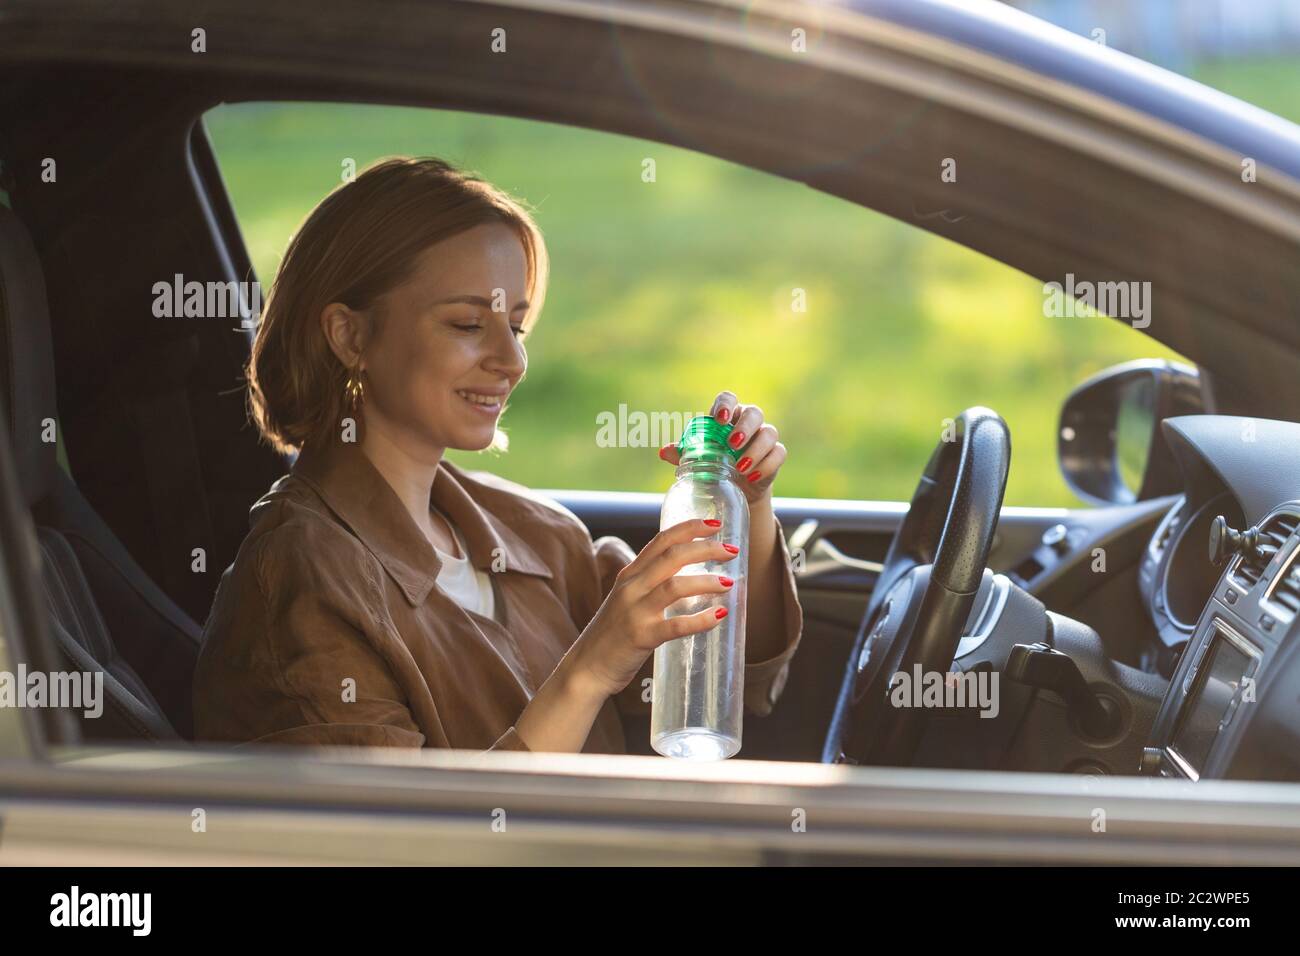 La donna driver beve acqua da una bottiglia ricaricabile nella sua auto, assetata al volante, si è fermata a riposo. Foto Stock